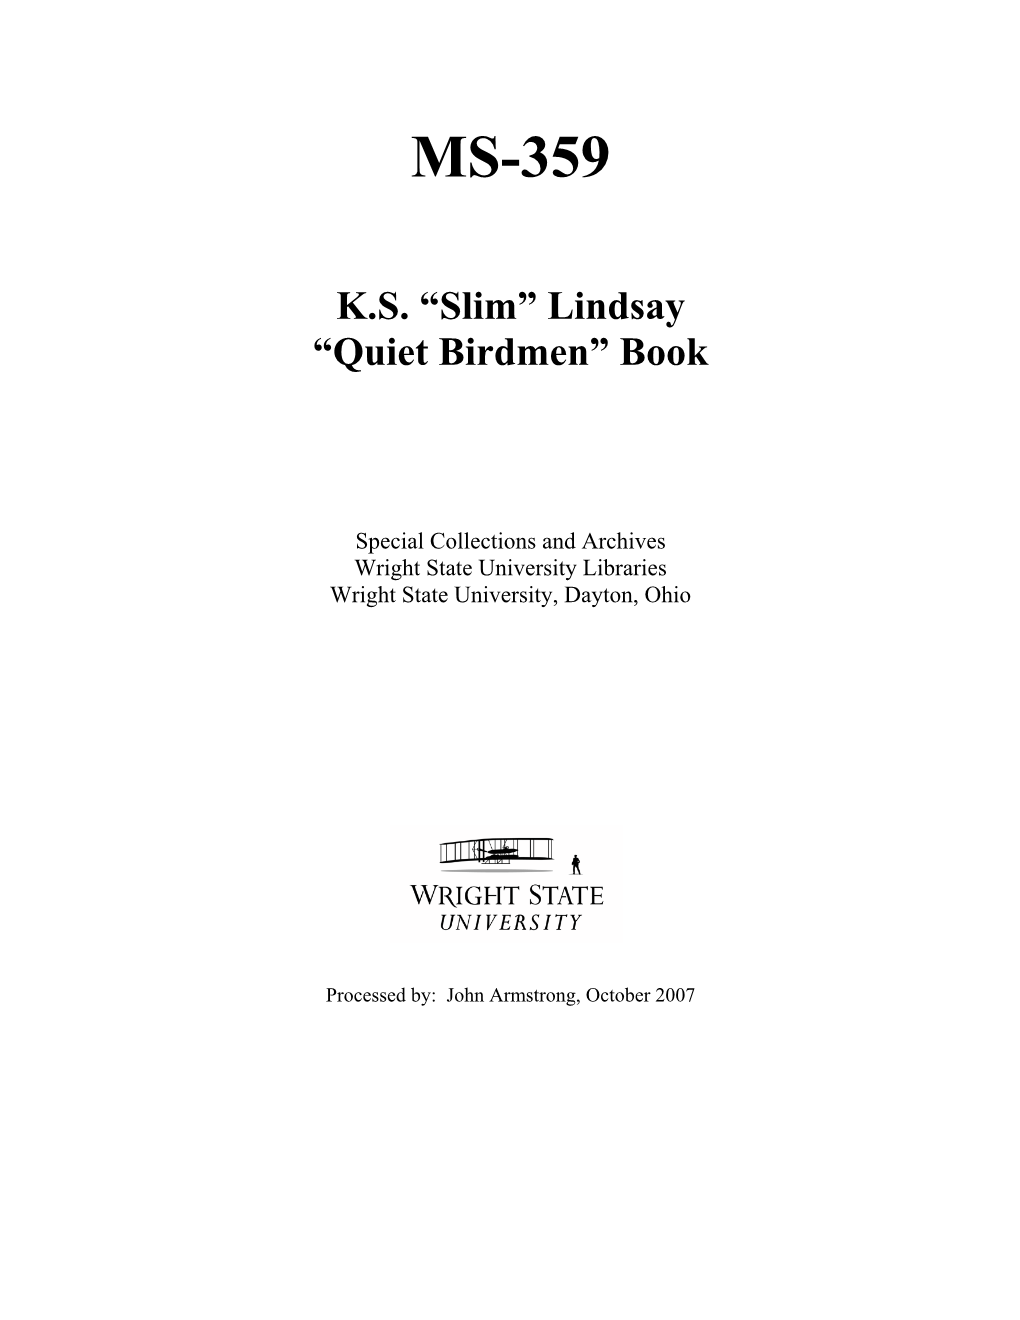 Quiet Birdmen” Book